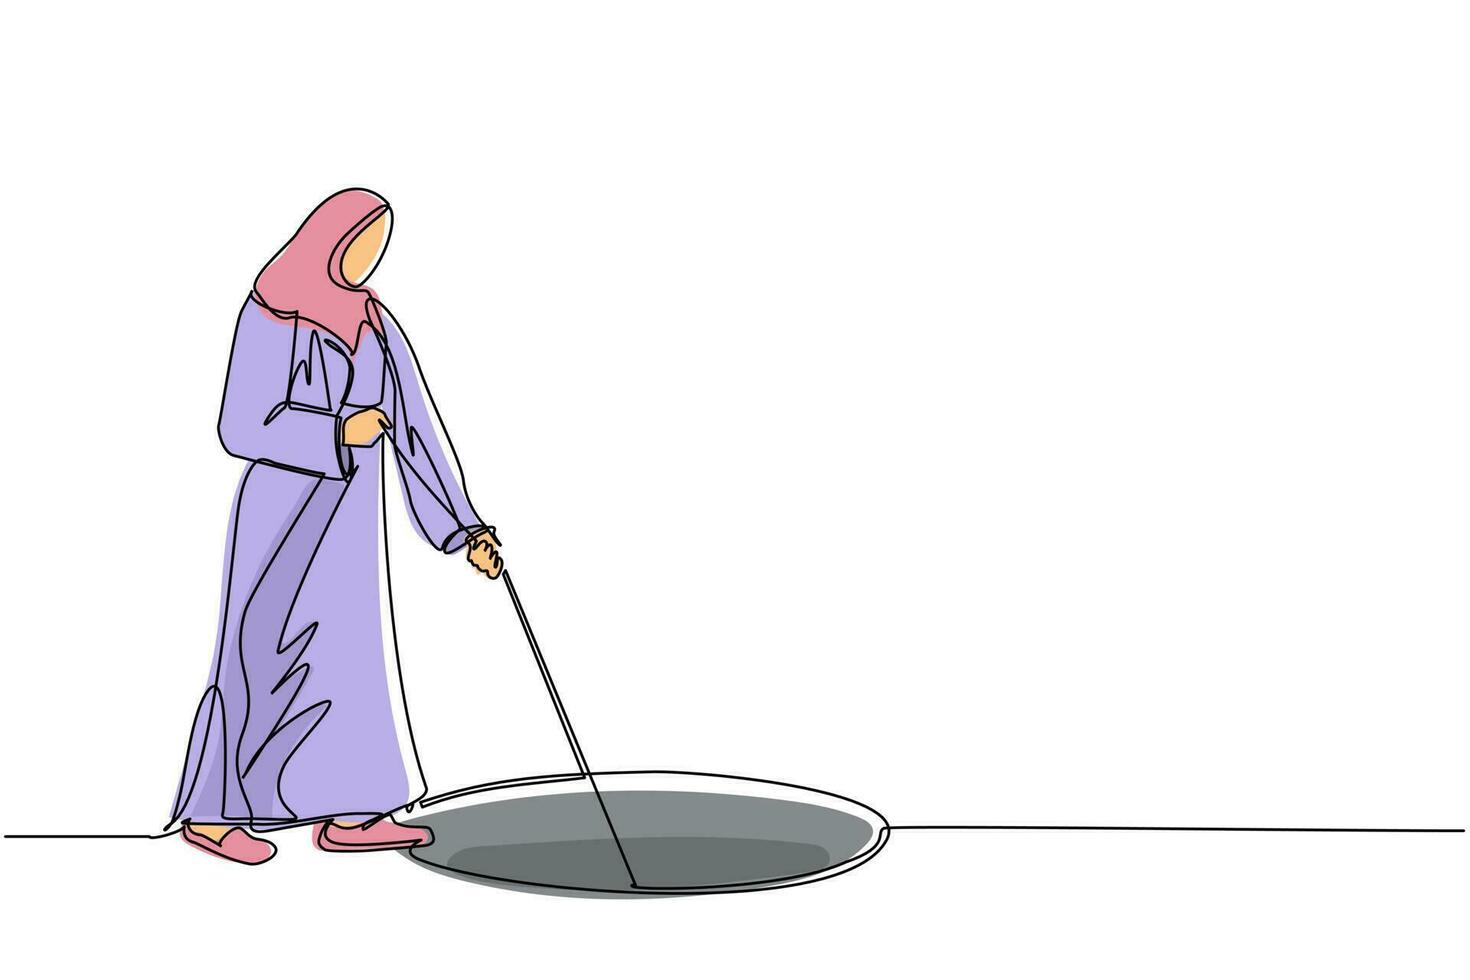 durchgehende einstrichzeichnung arabische geschäftsfrau streckt seil in loch. frau wundert sich, betrachtet großes loch, geschäftskonzept in gelegenheit, erforschung, herausforderung. einzeiliger Entwurfsvektor vektor